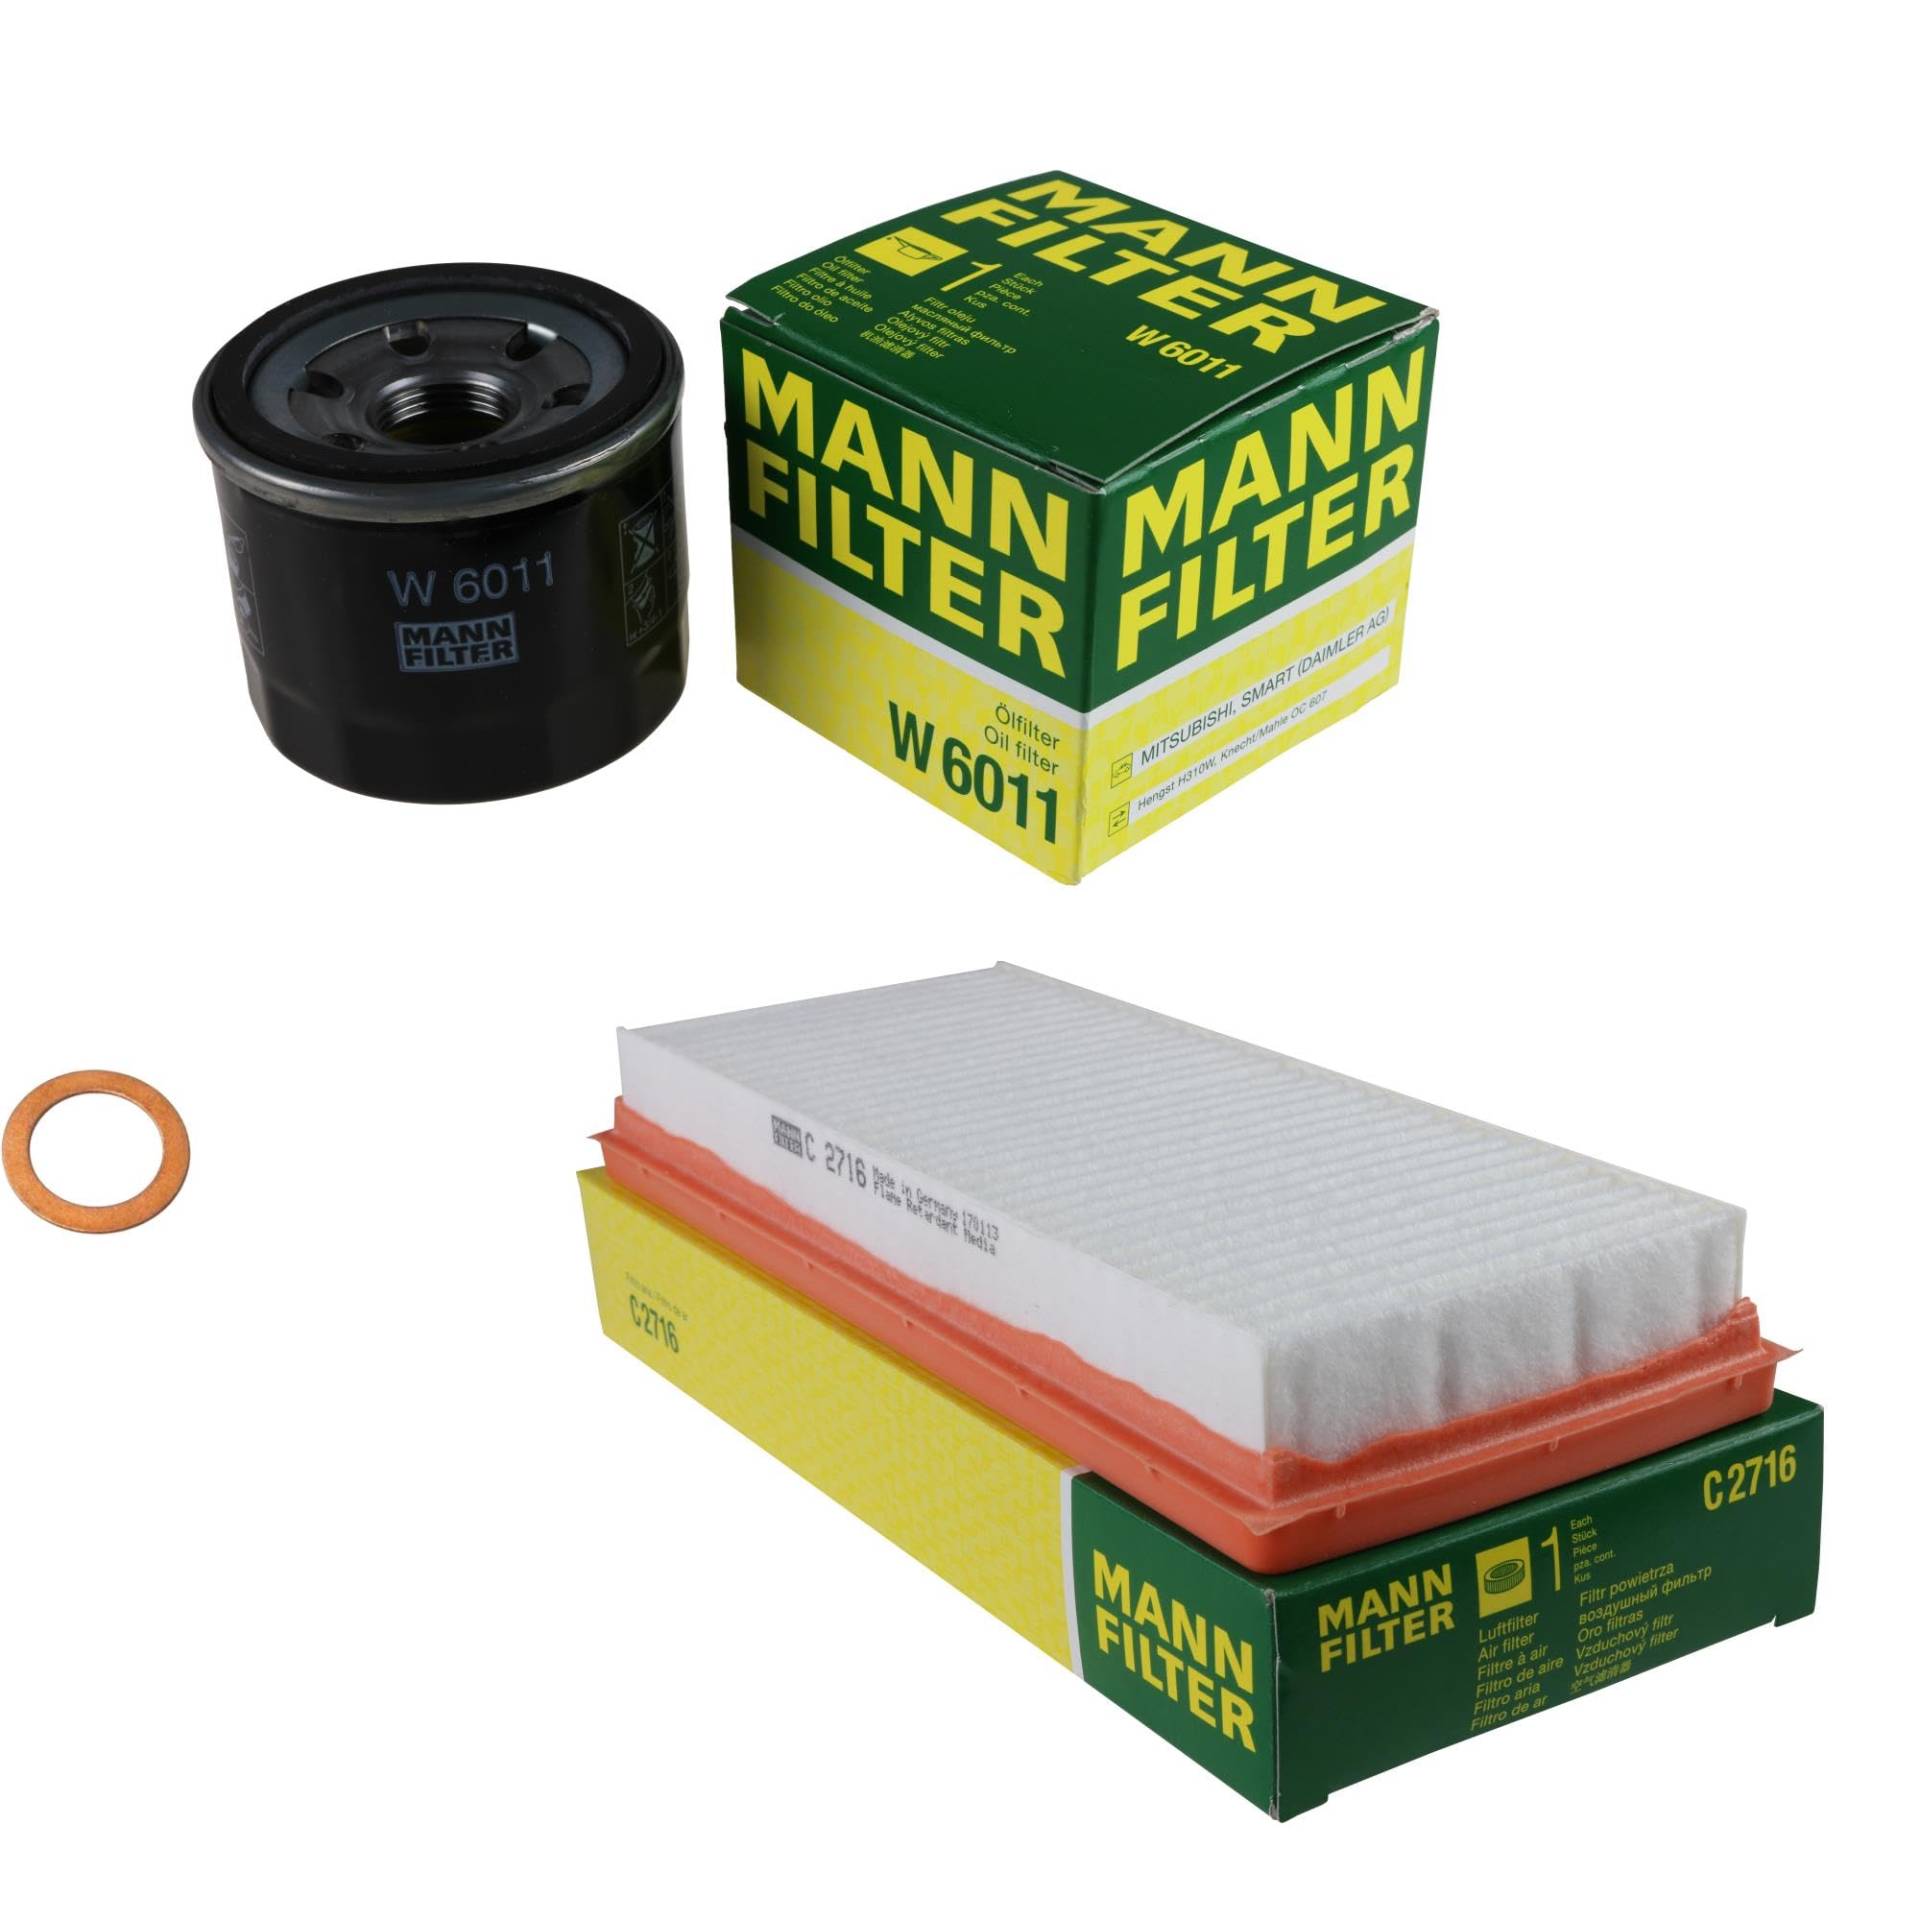 EISENFELS Filter Set Inspektionspaket erstellt mit MANN-FILTER Ölfilter W 6011, Luftfilter C 2716, Dichtring von EISENFELS